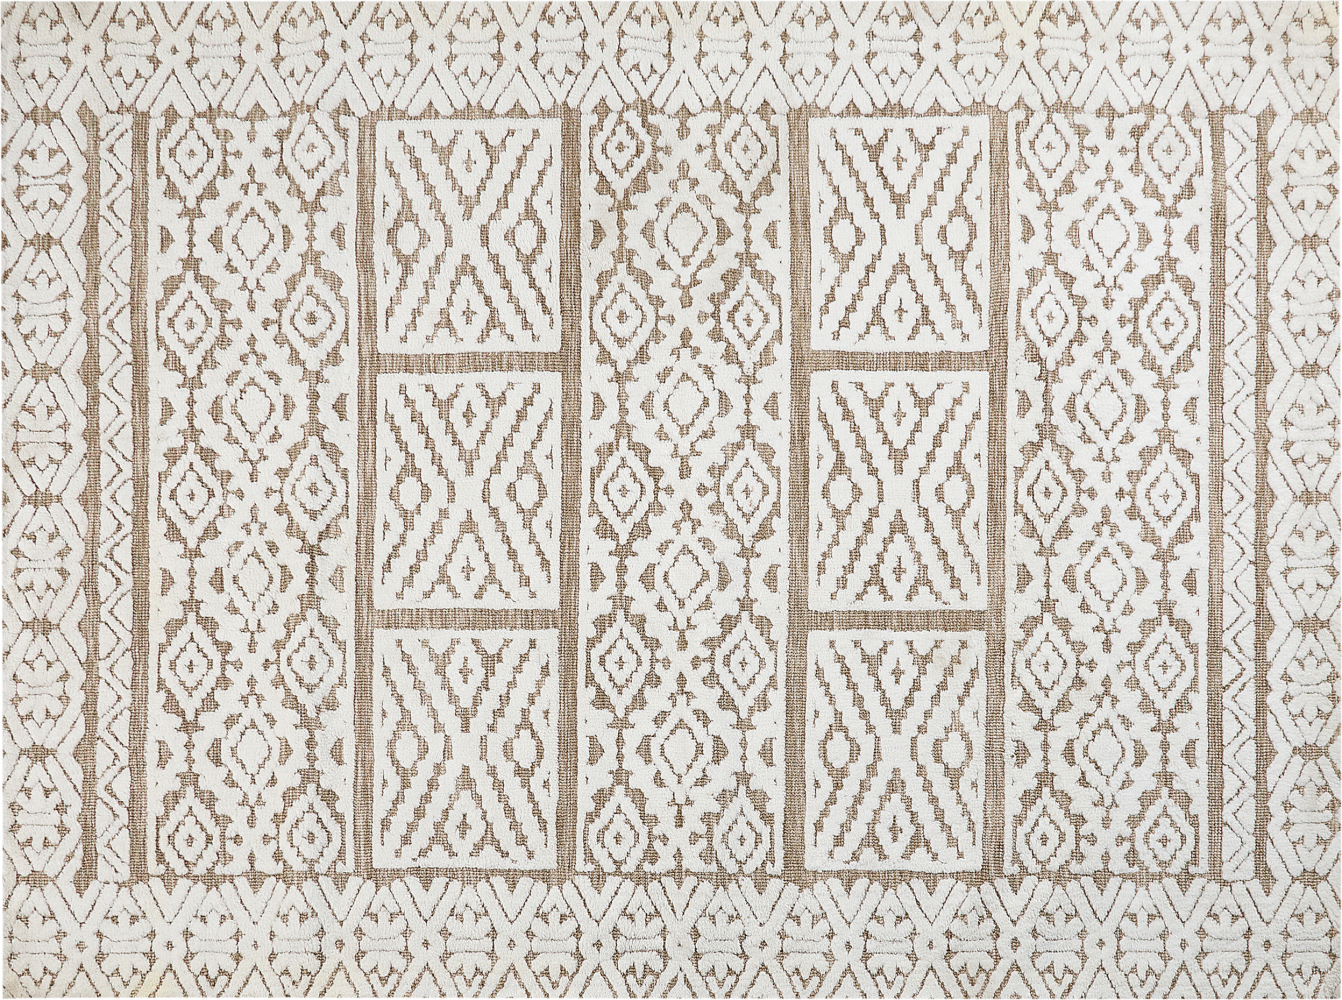 Teppich cremeweiß beige 300 x 400 cm orientalisches Muster GOGAI Bild 1